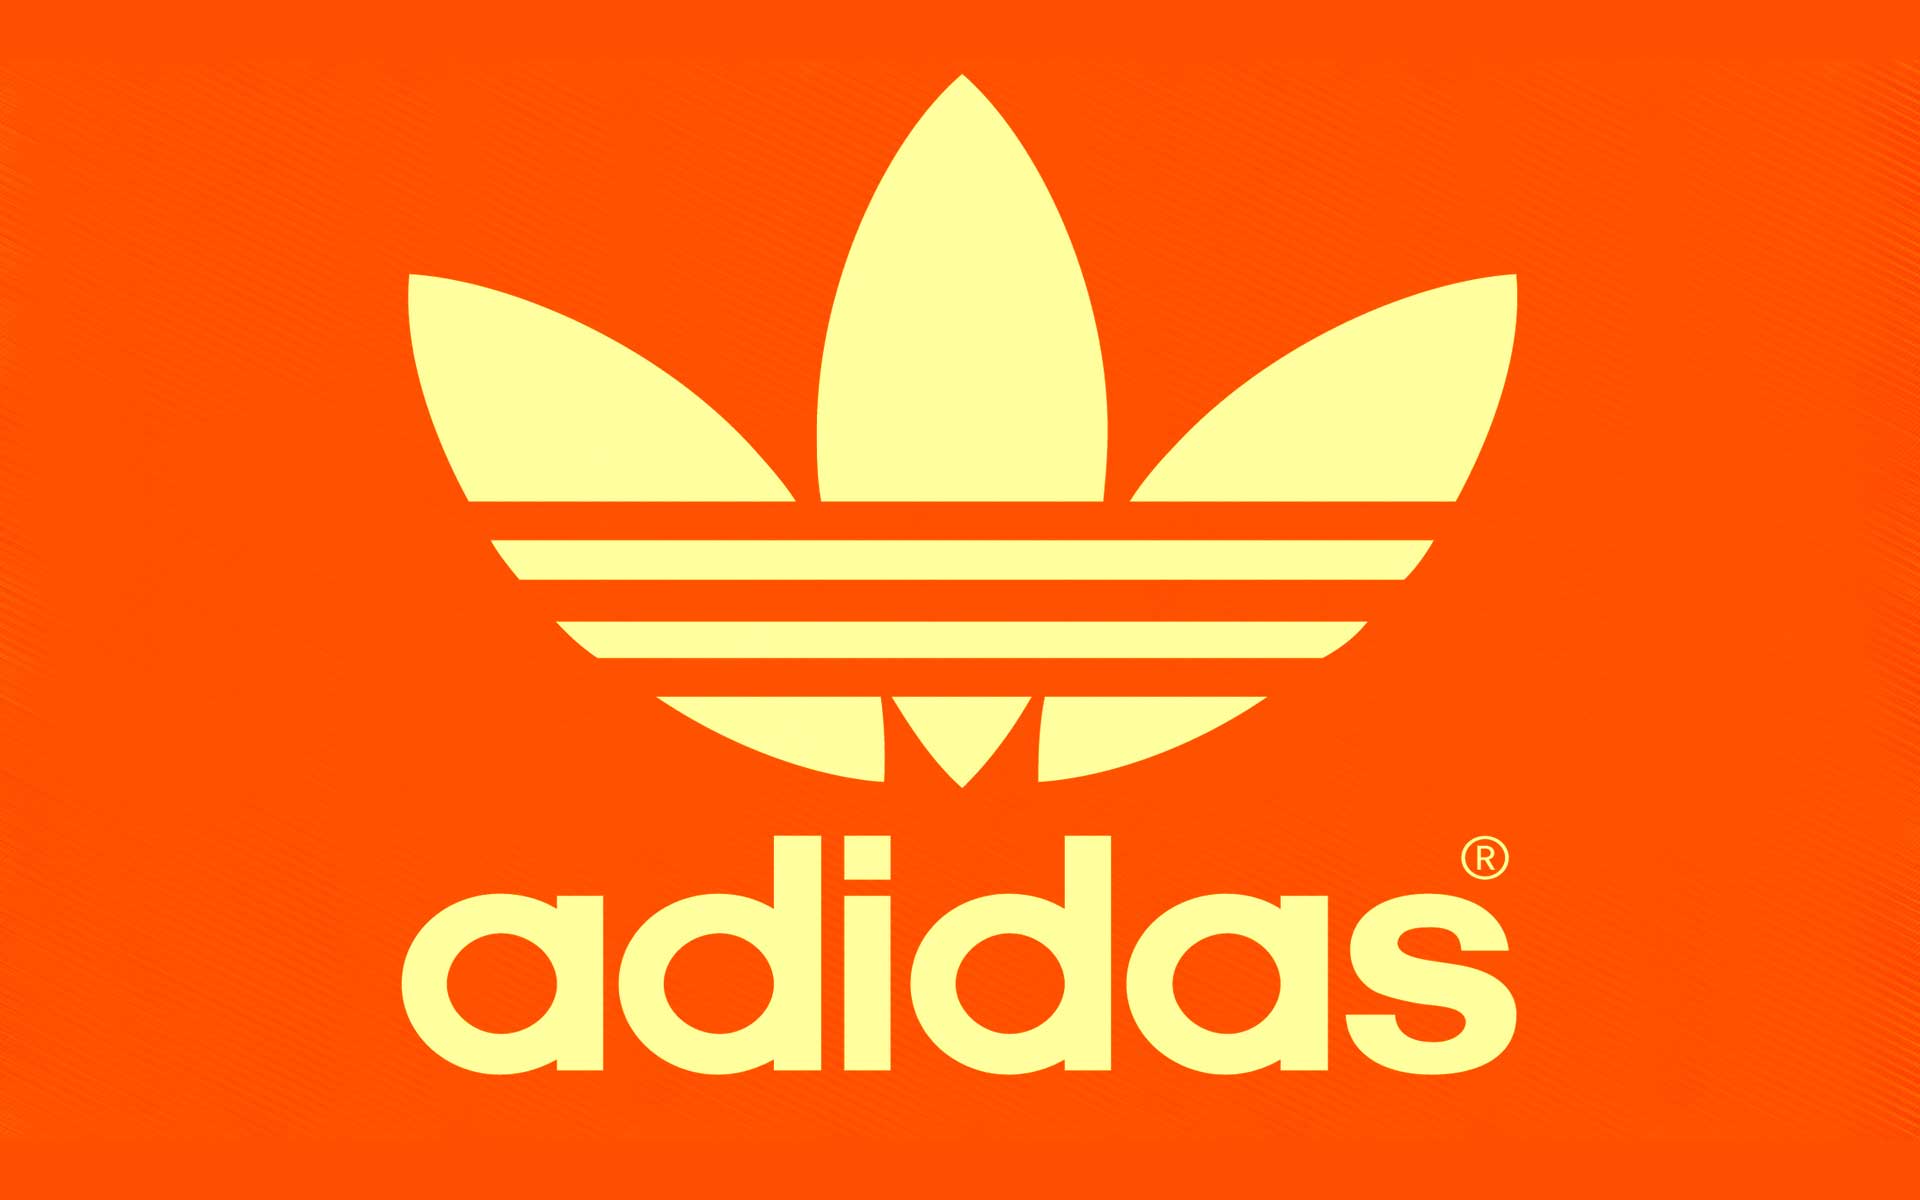 Update more than 78 adidas logo wallpaper best - 3tdesign.edu.vn